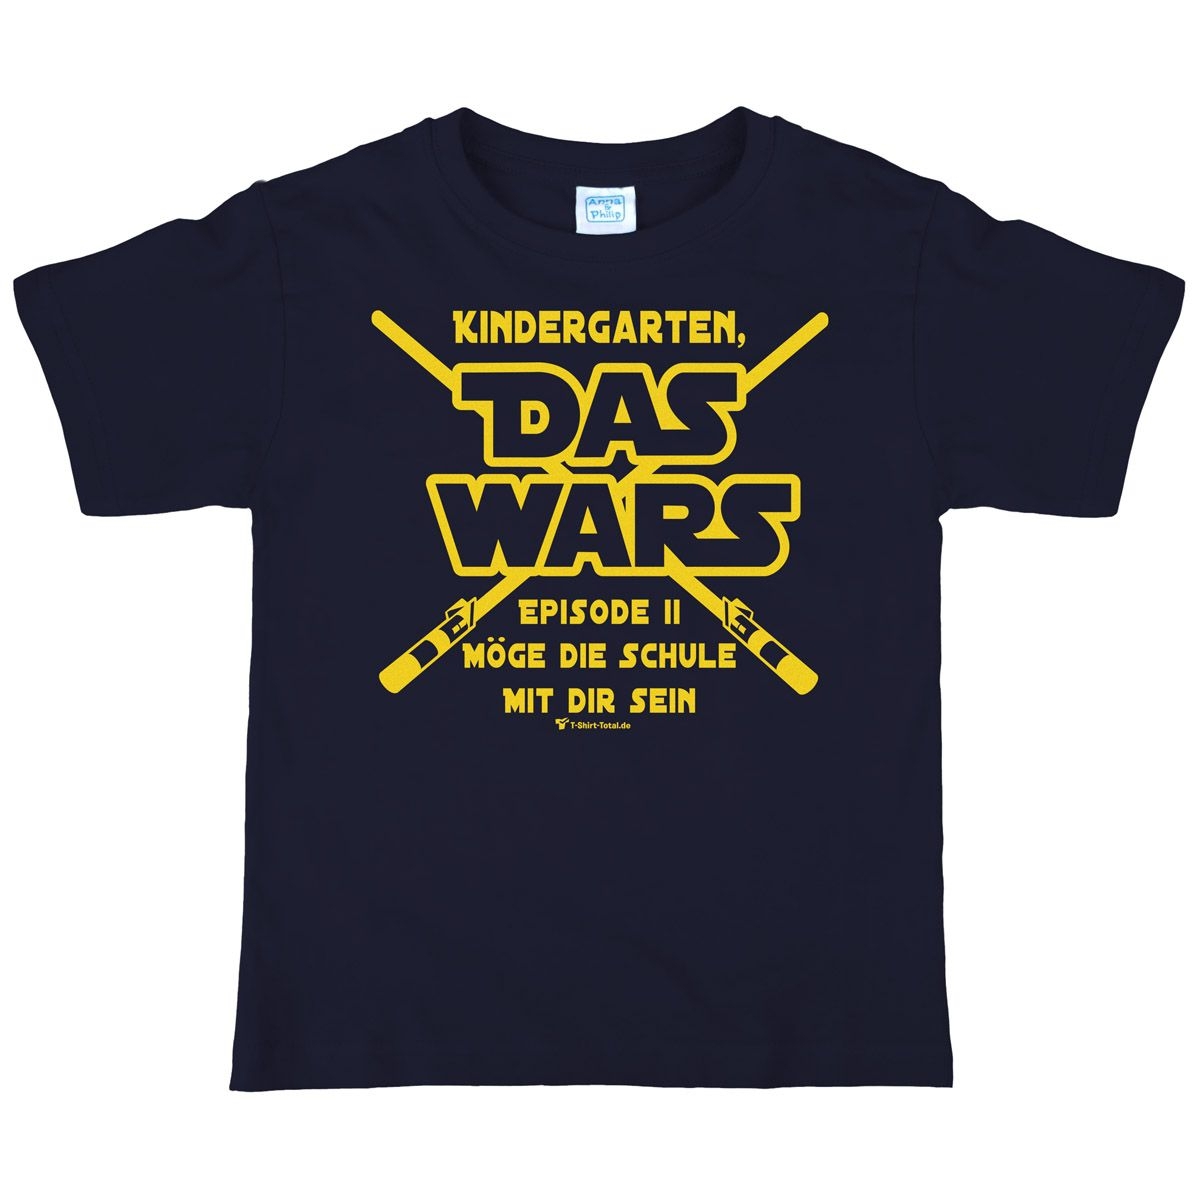 Das wars Kindergarten Kinder T-Shirt mit Namen navy 134 / 140